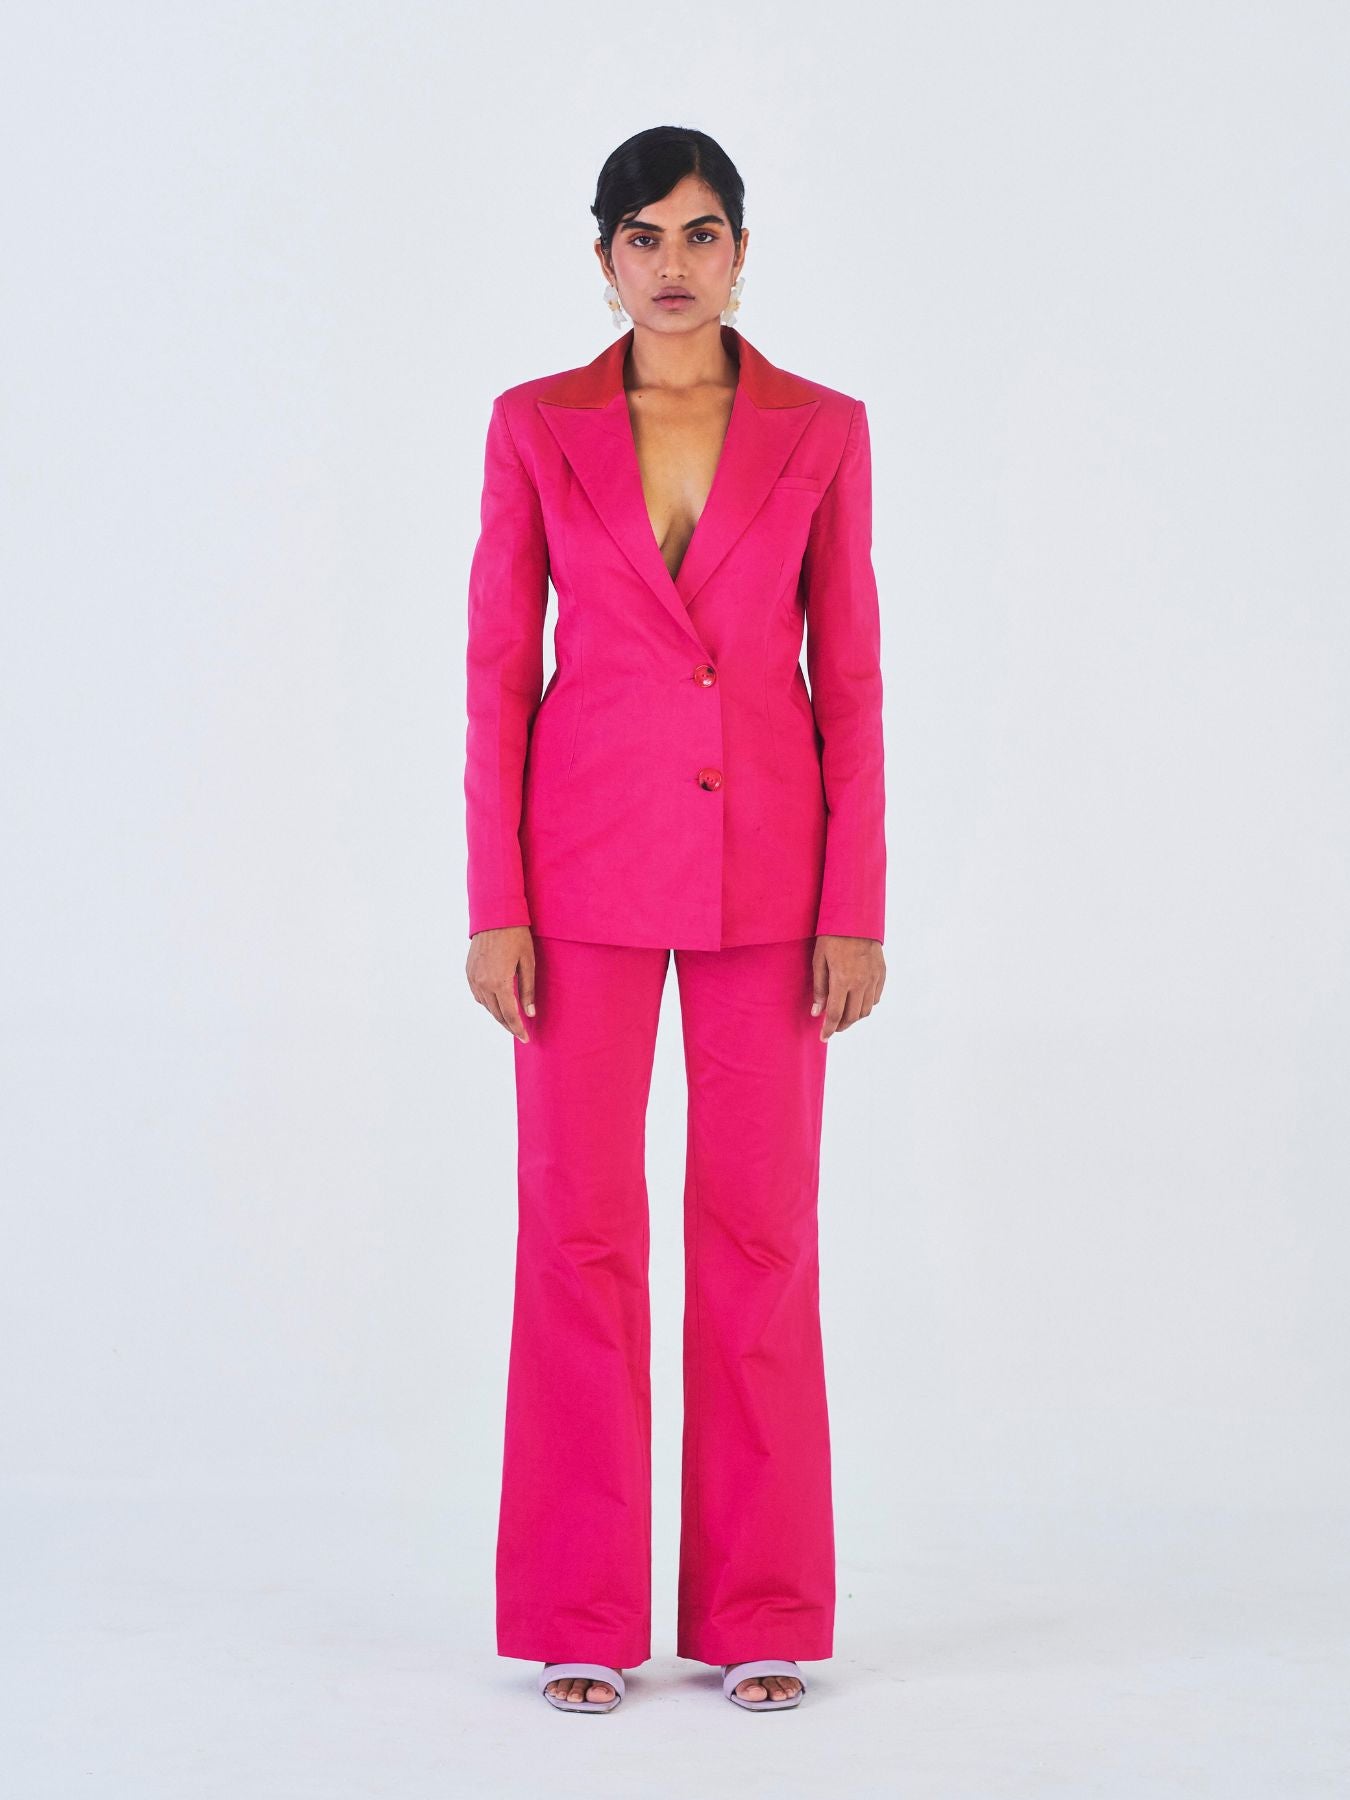  Women's Trouser Suits - Pink / Women's Trouser Suits